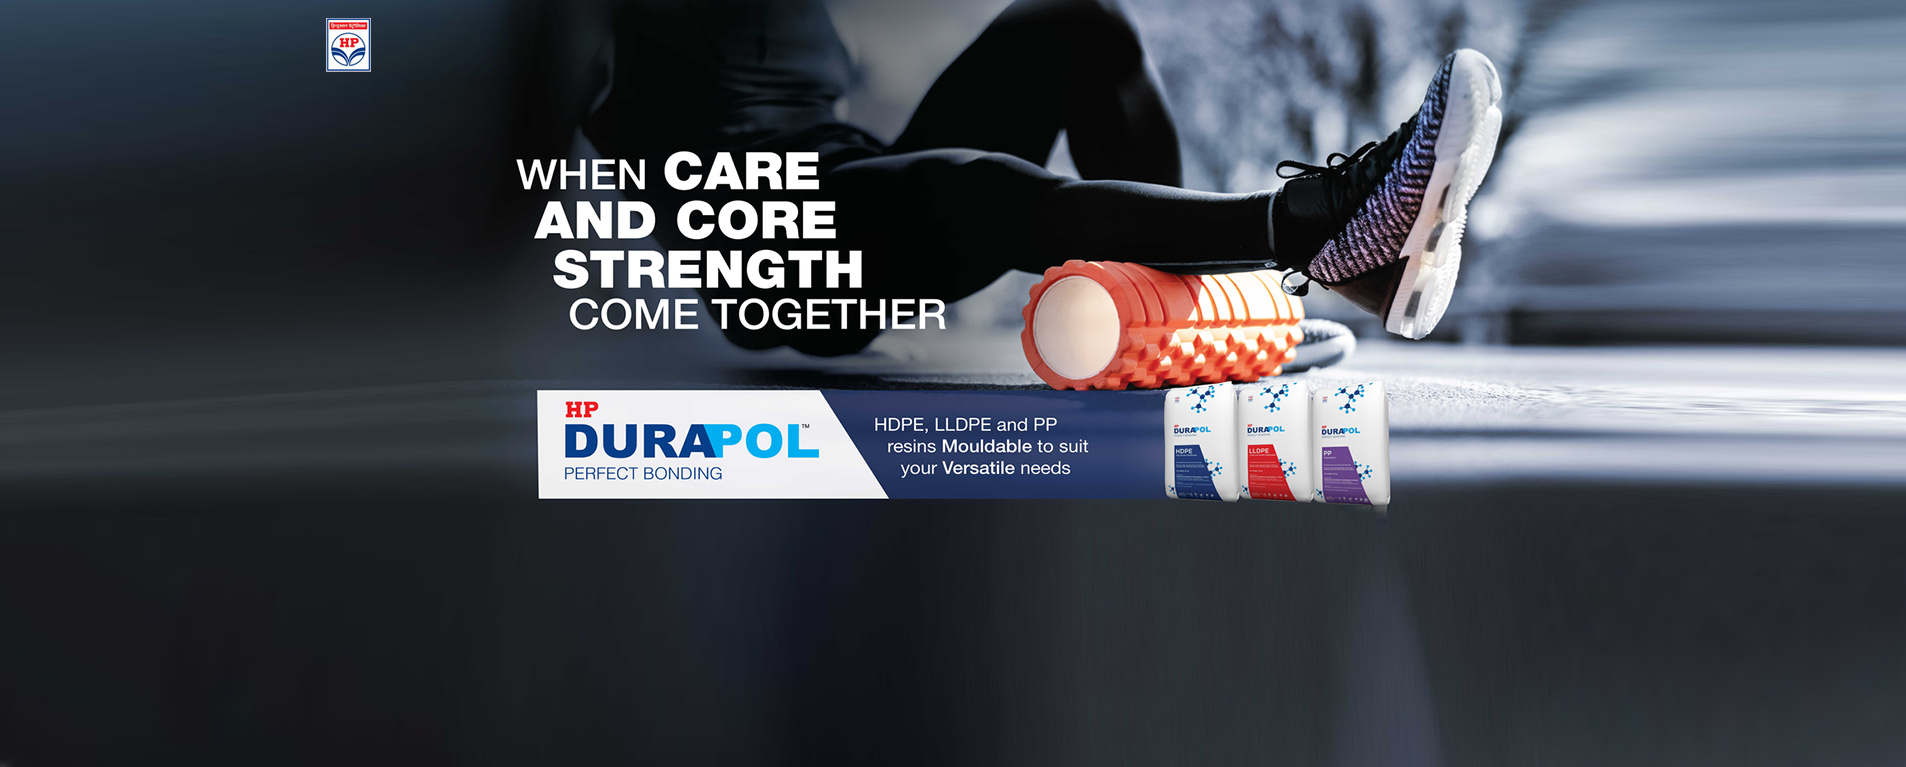 Durapol Brand Campaign - 1